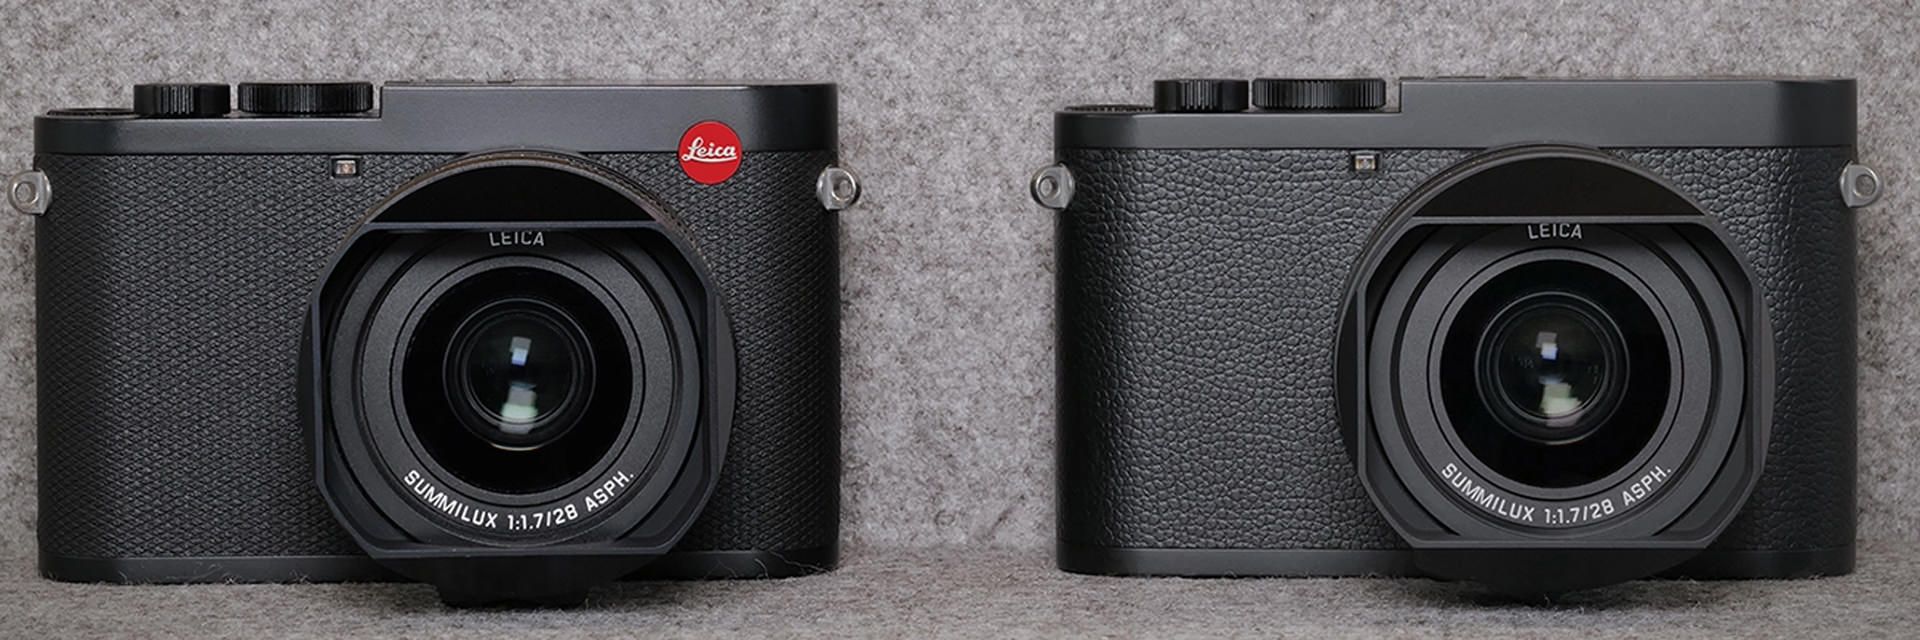 مرجع متخصصين ايران مقايسه دوربين لايكا كيو 2 مونوكروم / Leica Q2 Monochrom با مدل عادي